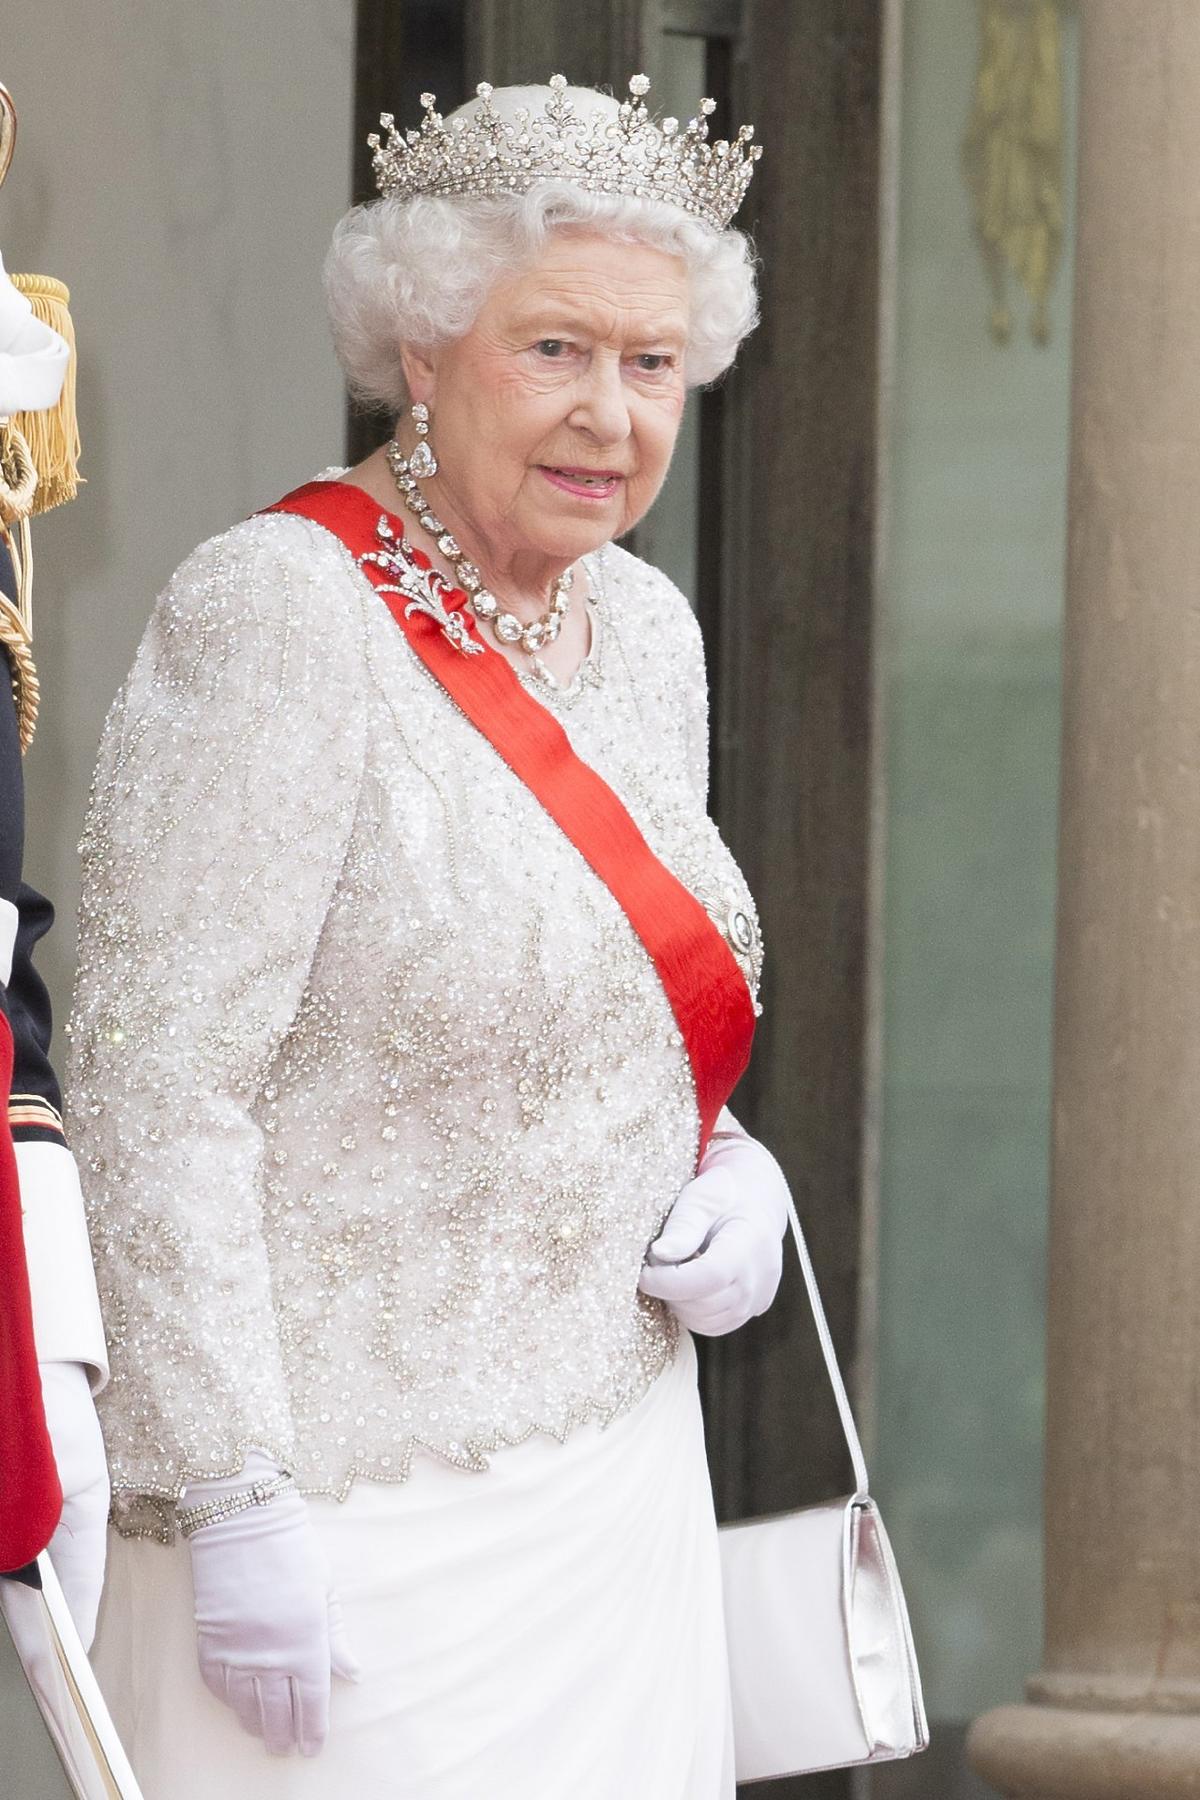 Znamy ostatnie życzenie królowej Elżbiety! Chciała, aby jej pogrzeb różnił się od tradycji